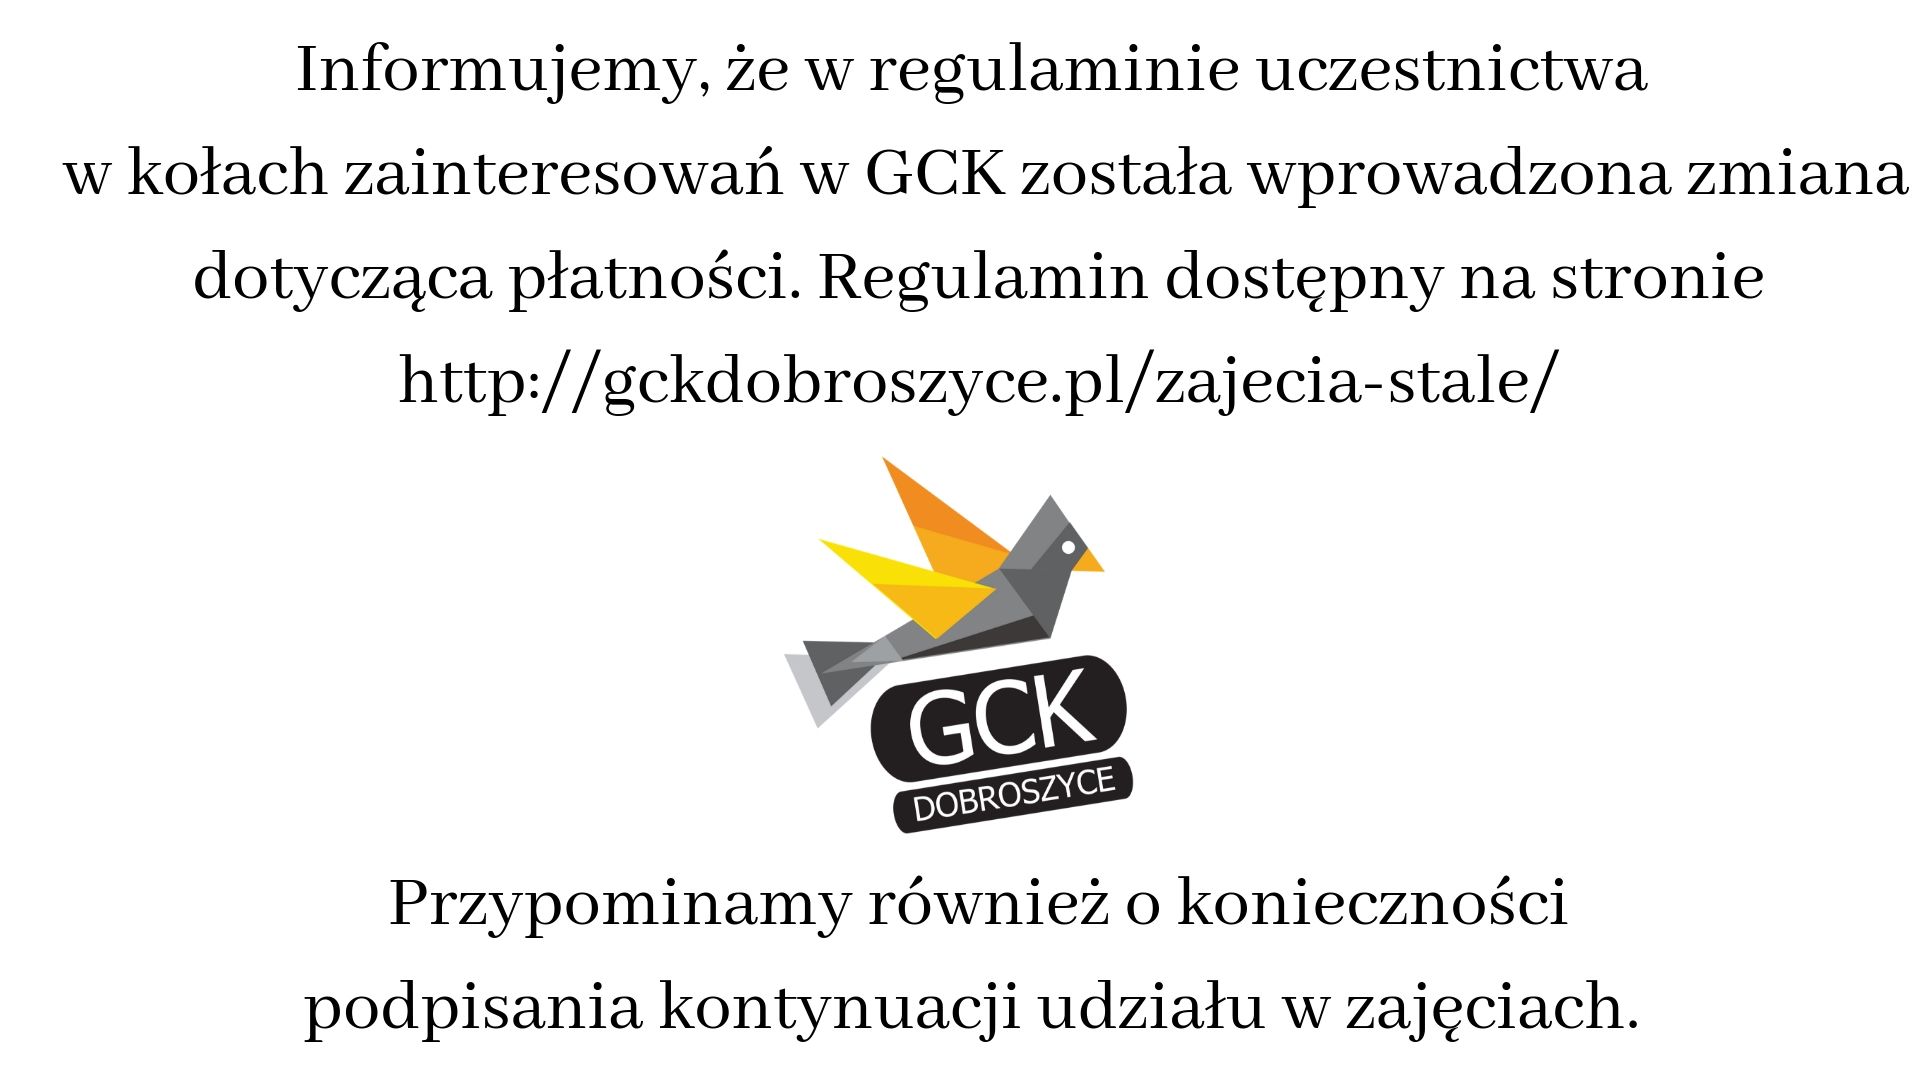 Informujemy, że w regulaminie uczestnictwa w kołach zainteresowań w GCK została wprowadzona zmiana dptycząca płatności. Regulamin dostępny na stronie http-%2F%2Fgckdobroszyce.pl%2Fzajecia-stale%